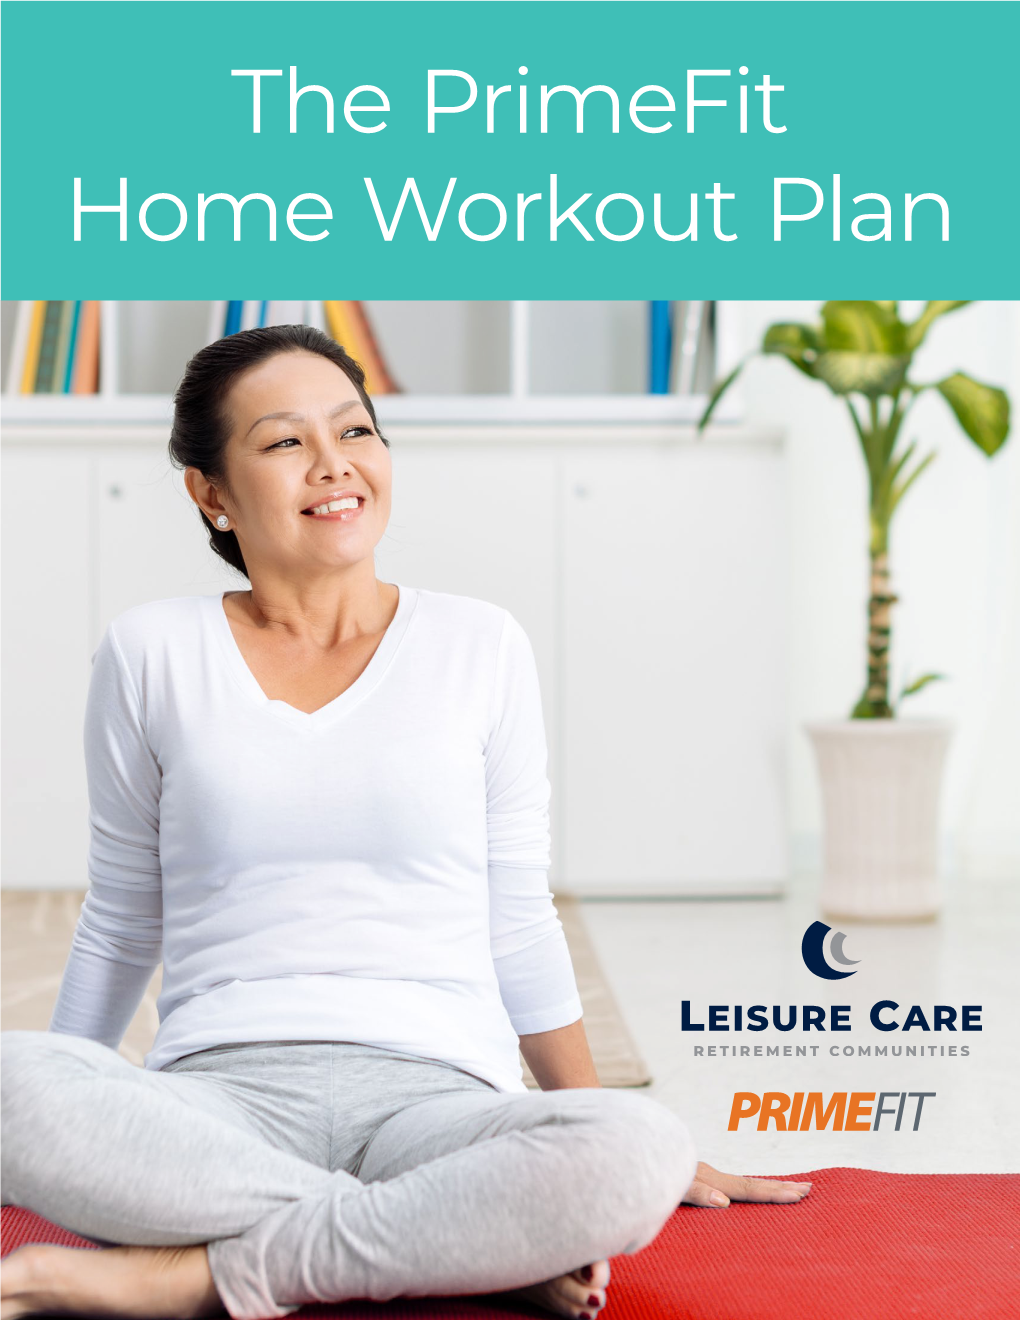 The Primefit Home Workout Plan